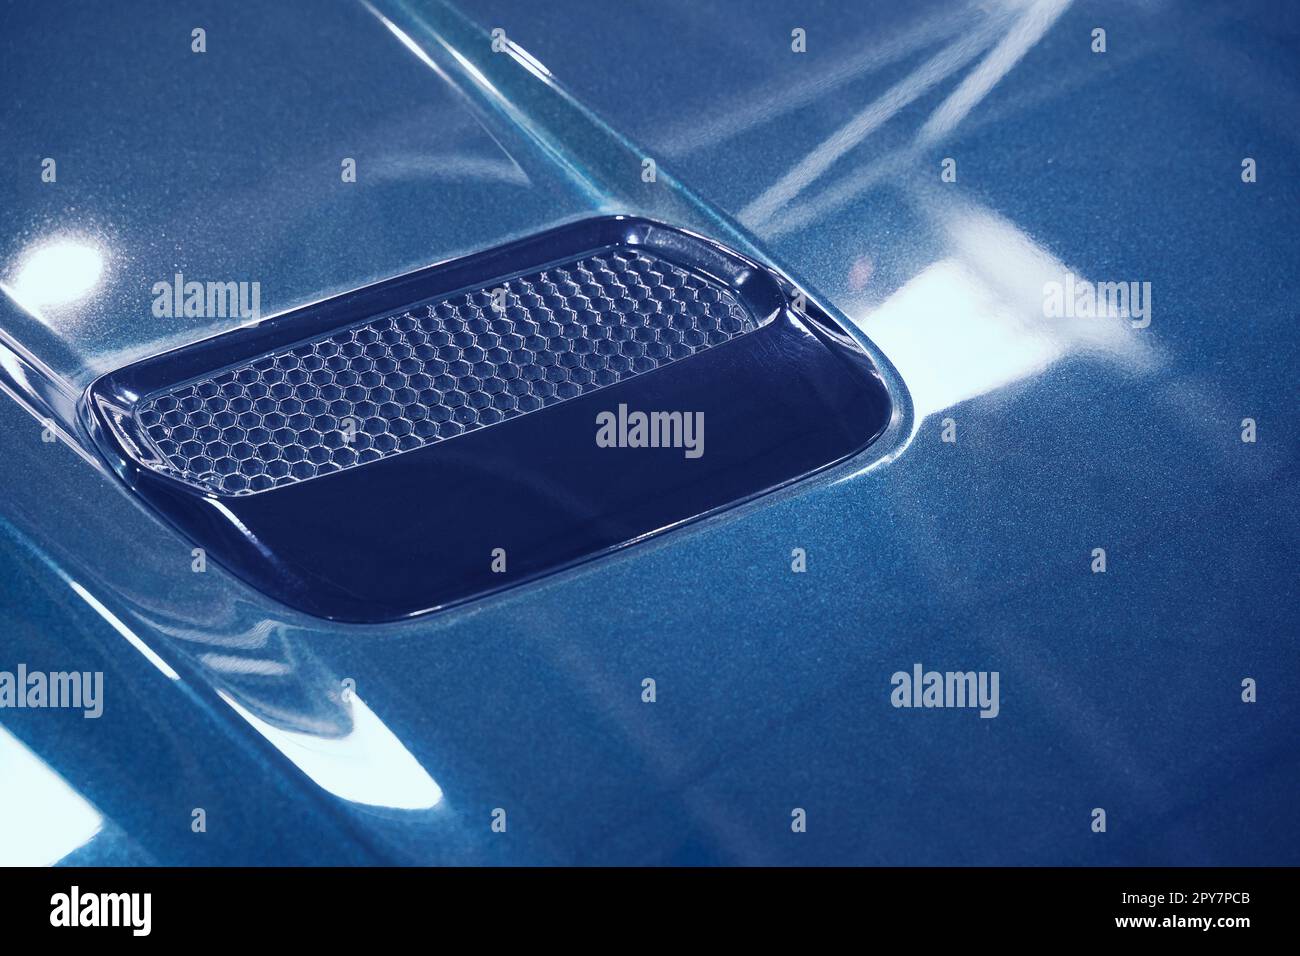 dettaglio di un'auto sportiva con cofano in metallo blu e ornamento con presa d'aria Foto Stock